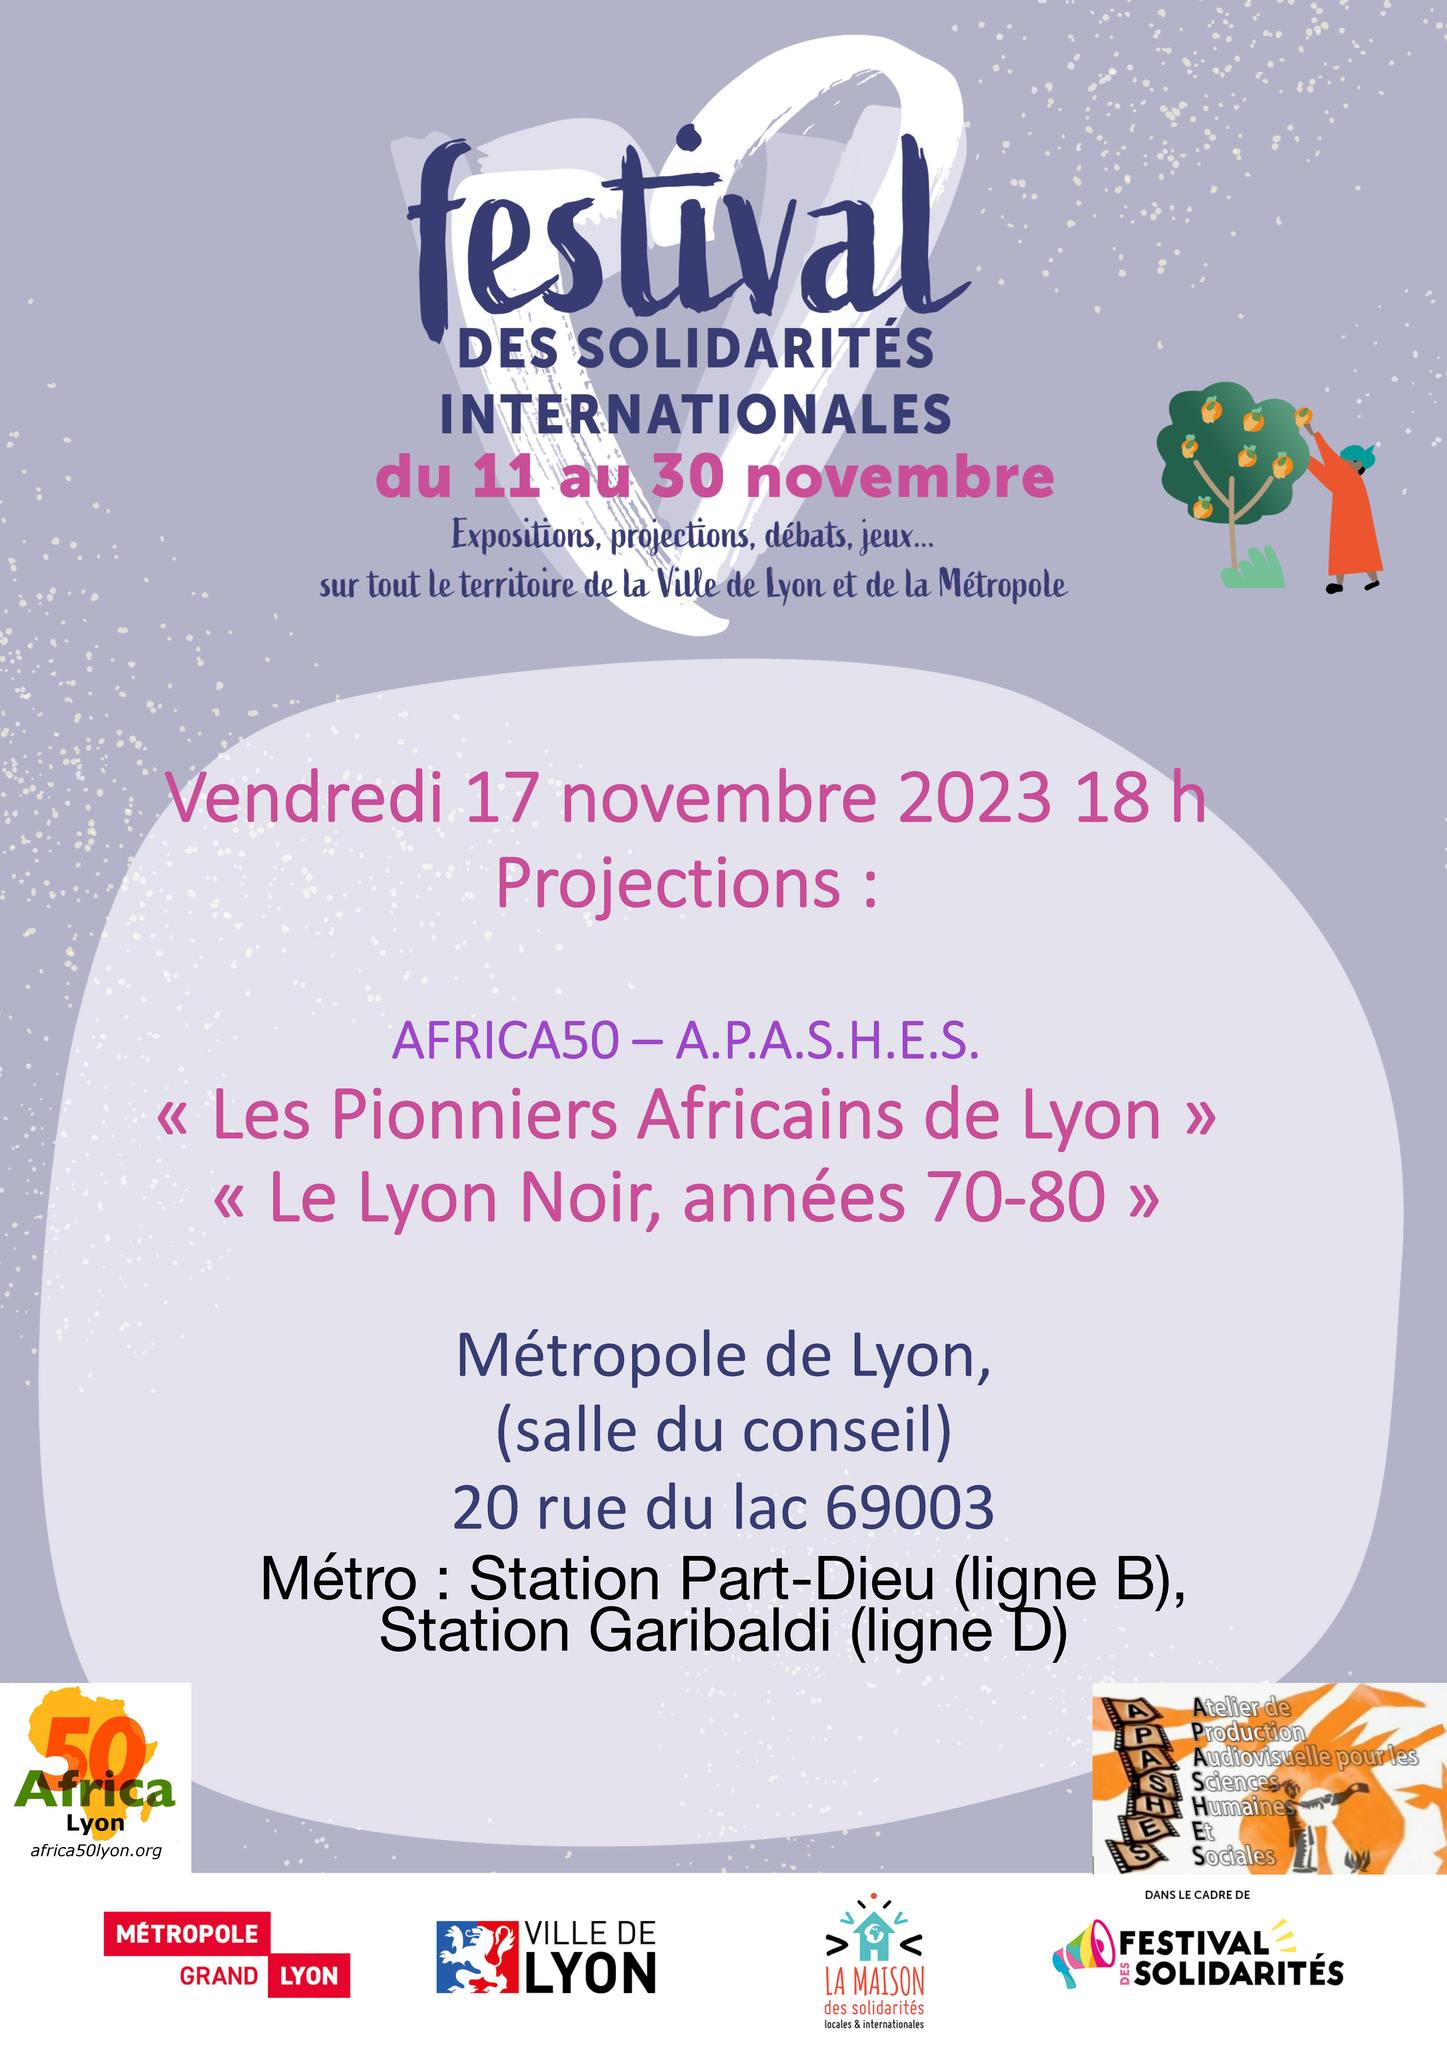 [CINE-DEBAT] Africa50 et Apashes présentent « Subsahariens en Métropole : migrations et solidarités » au Festival des Solidarités vendredi 17 novembre 2023 à Lyon